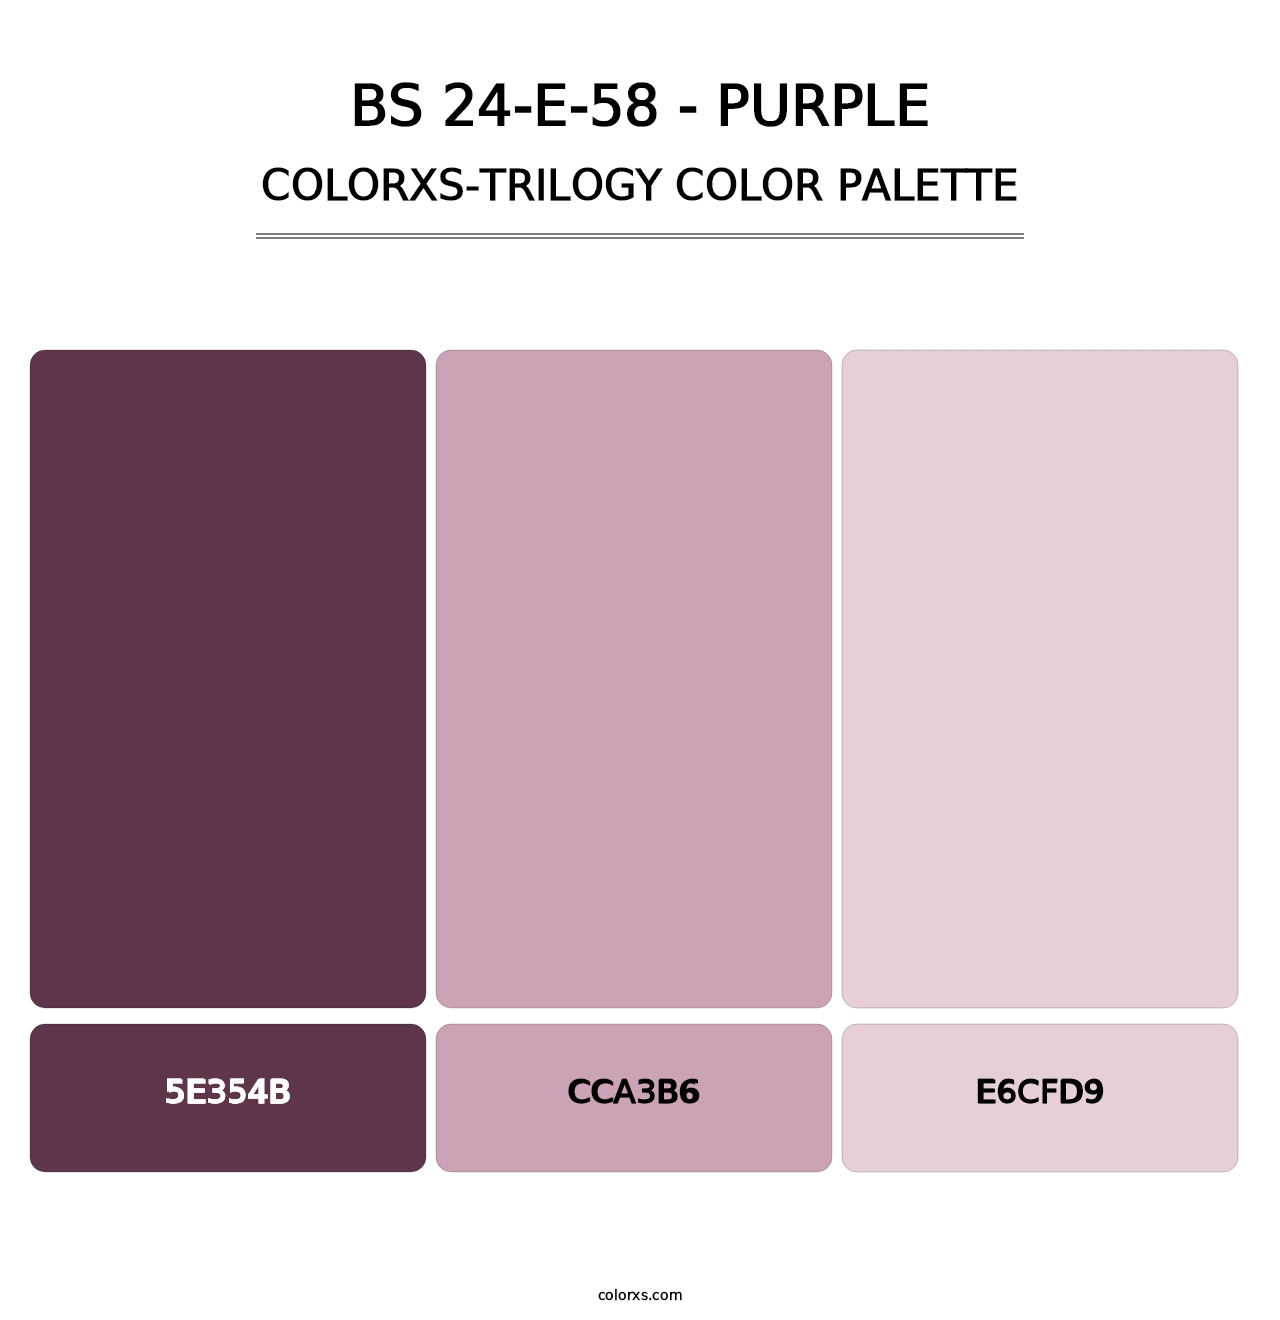 BS 24-E-58 - Purple - Colorxs Trilogy Palette